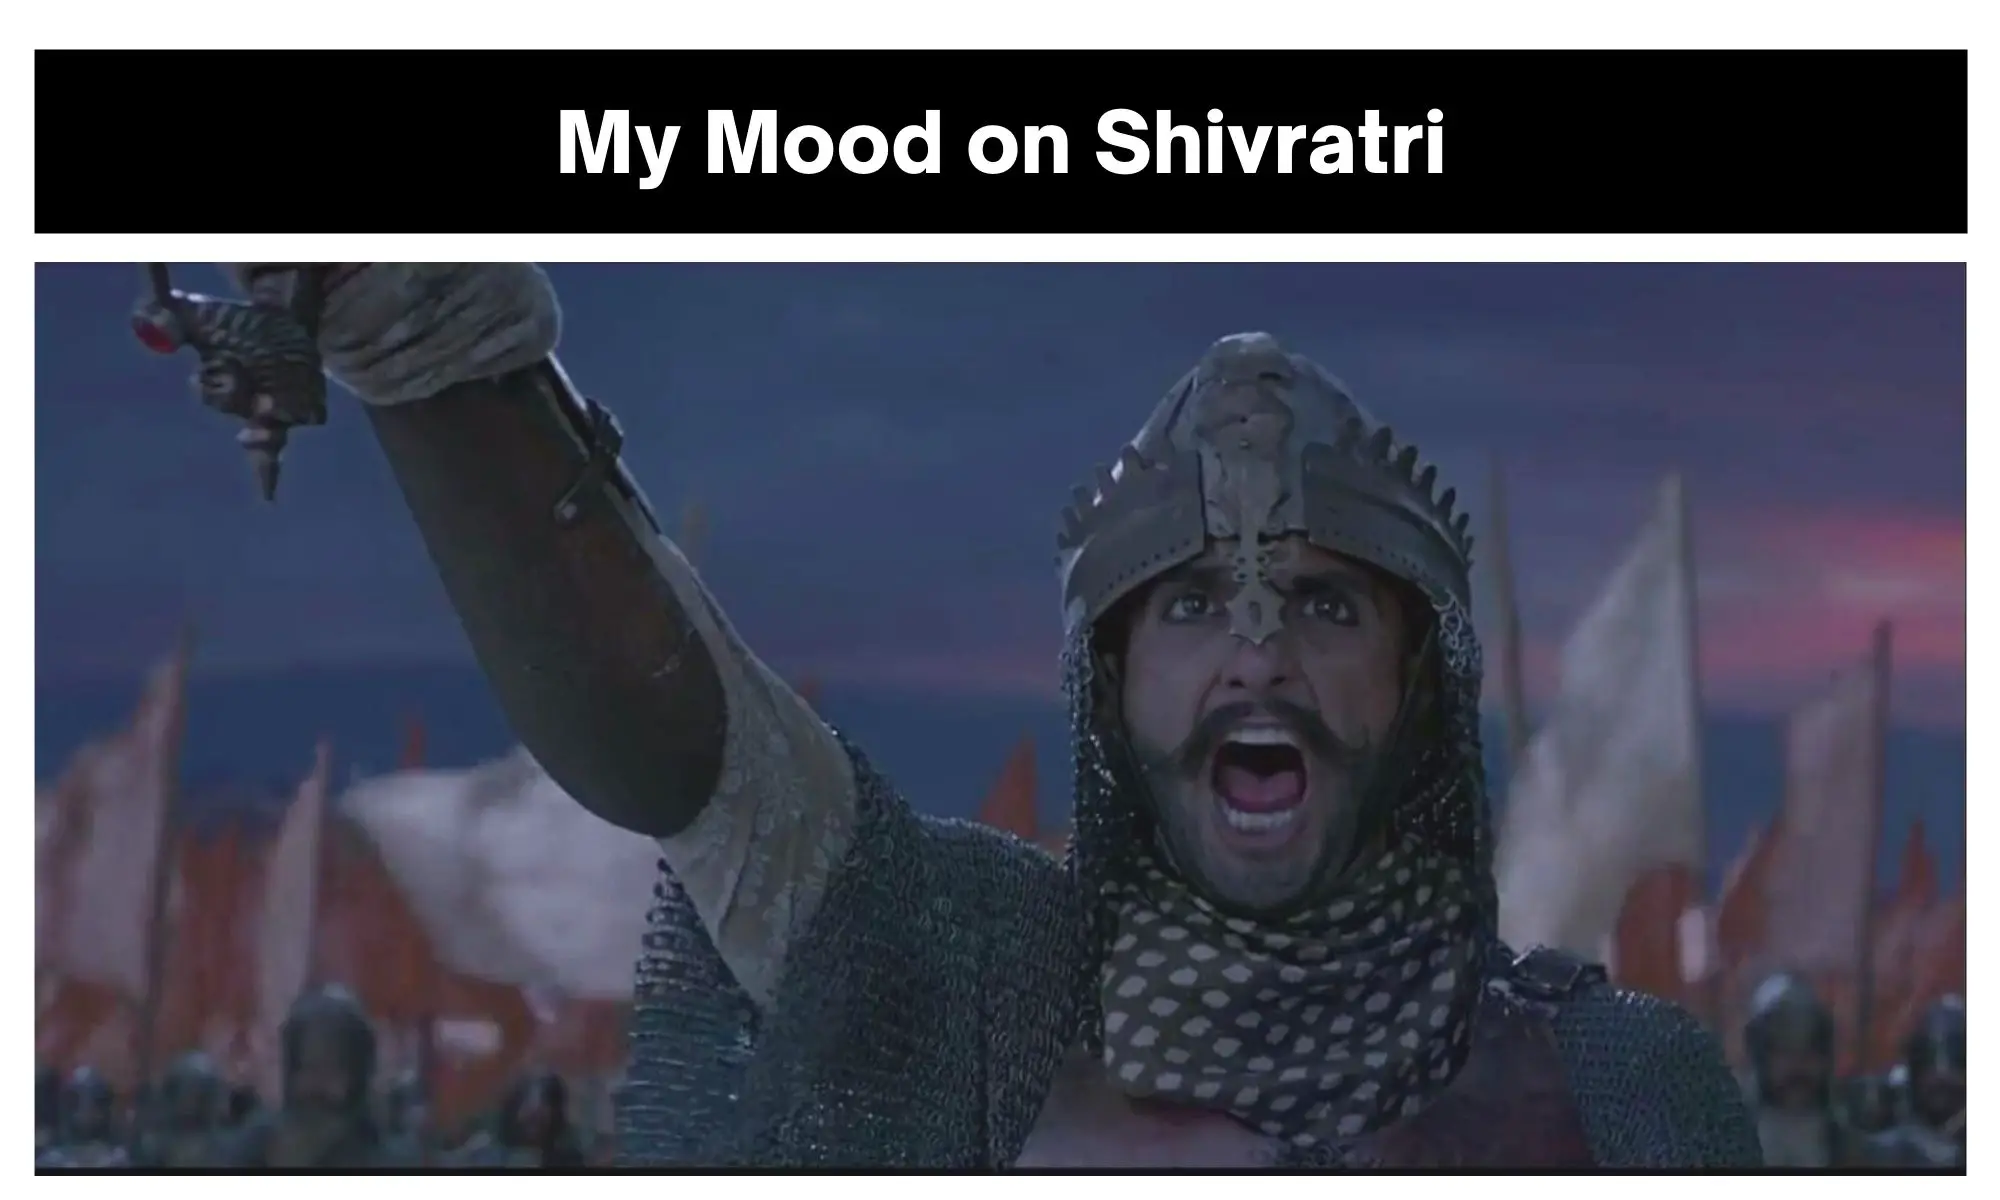 Shivratri meme on Bajirao